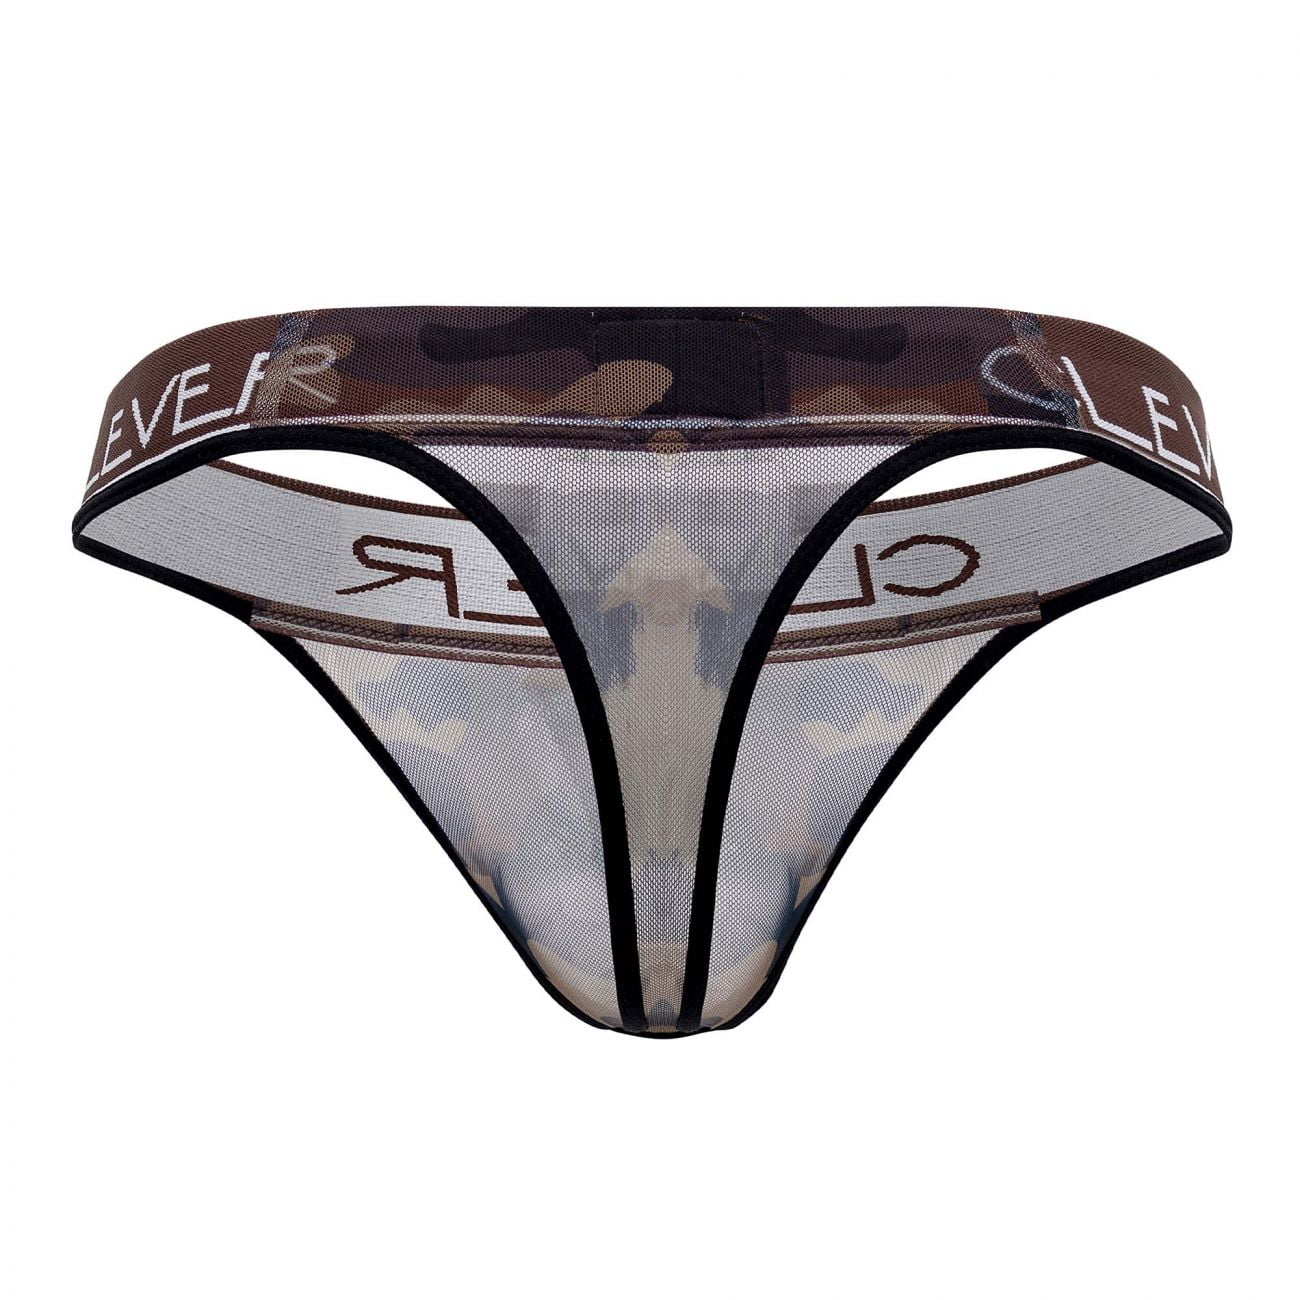 Clever Desert Thong Review – Underwear News Briefs